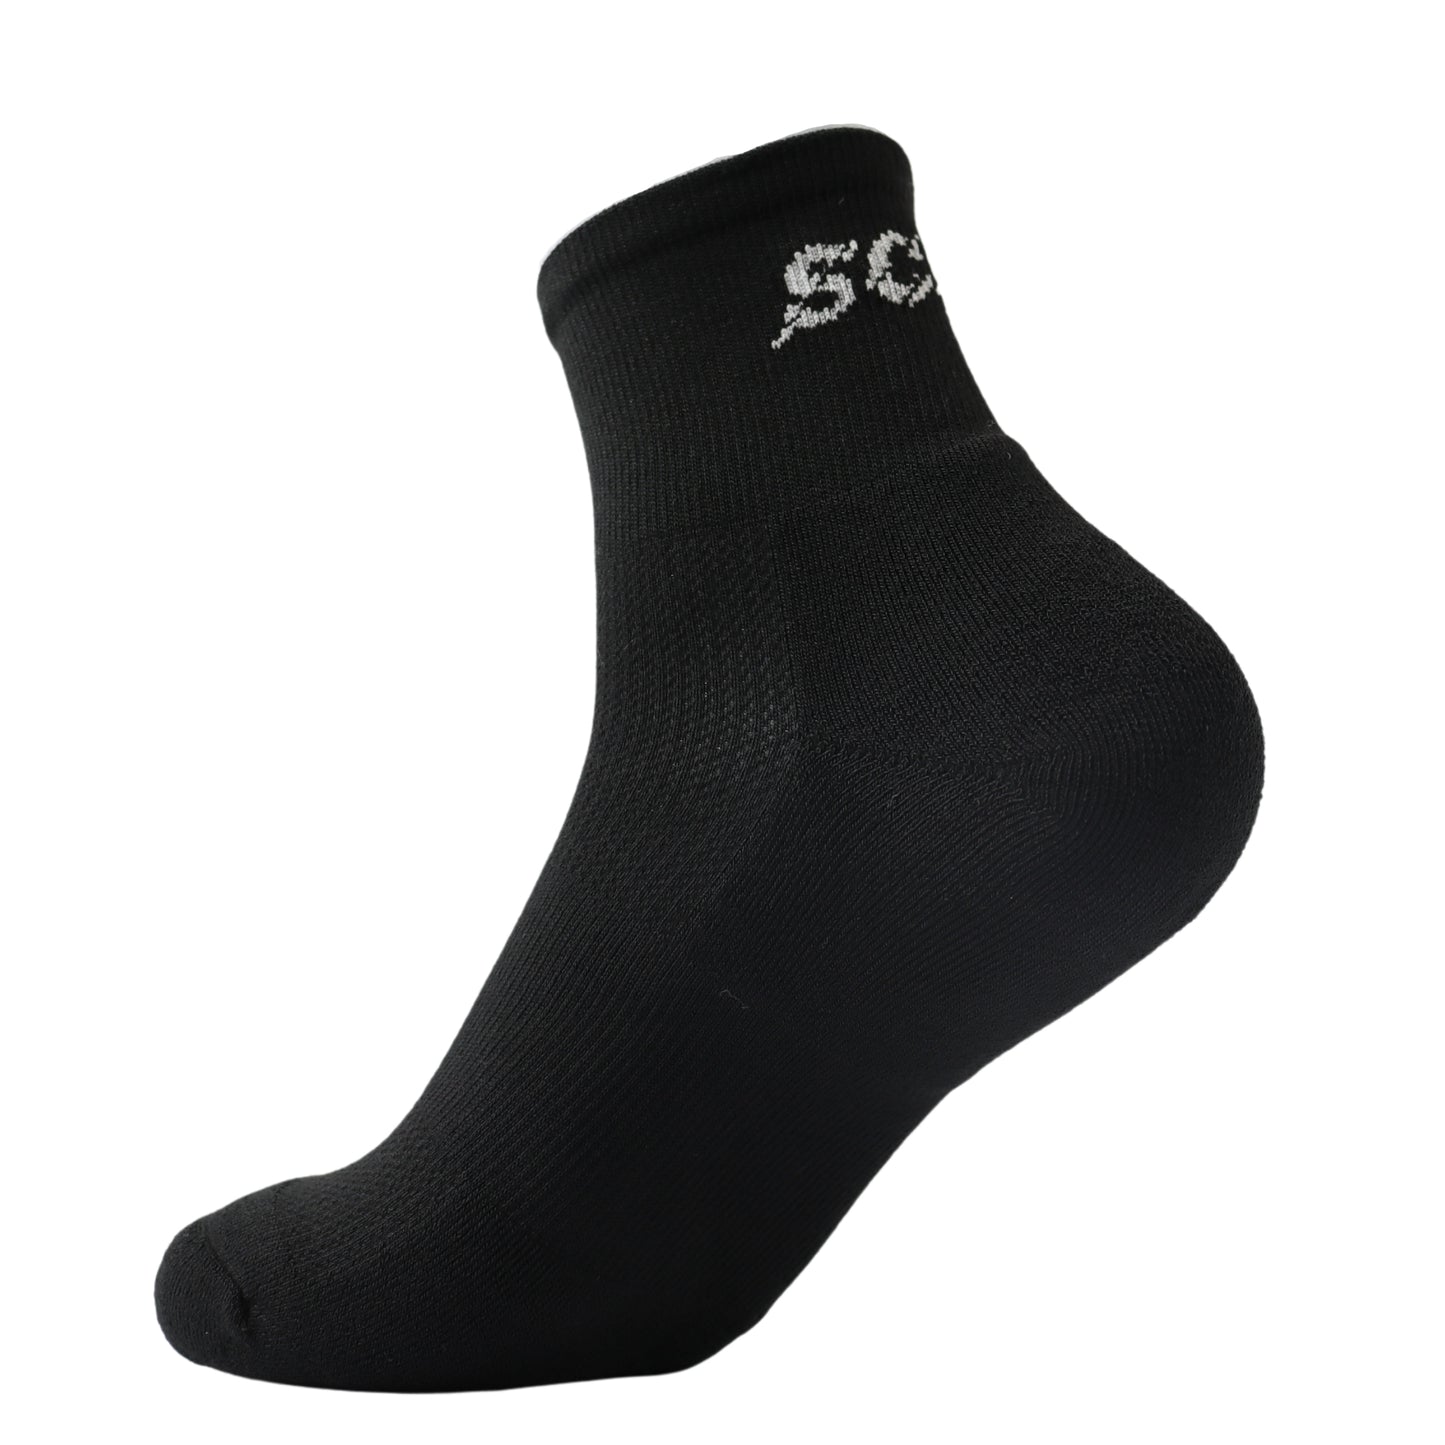 Men's black quarter sport socks